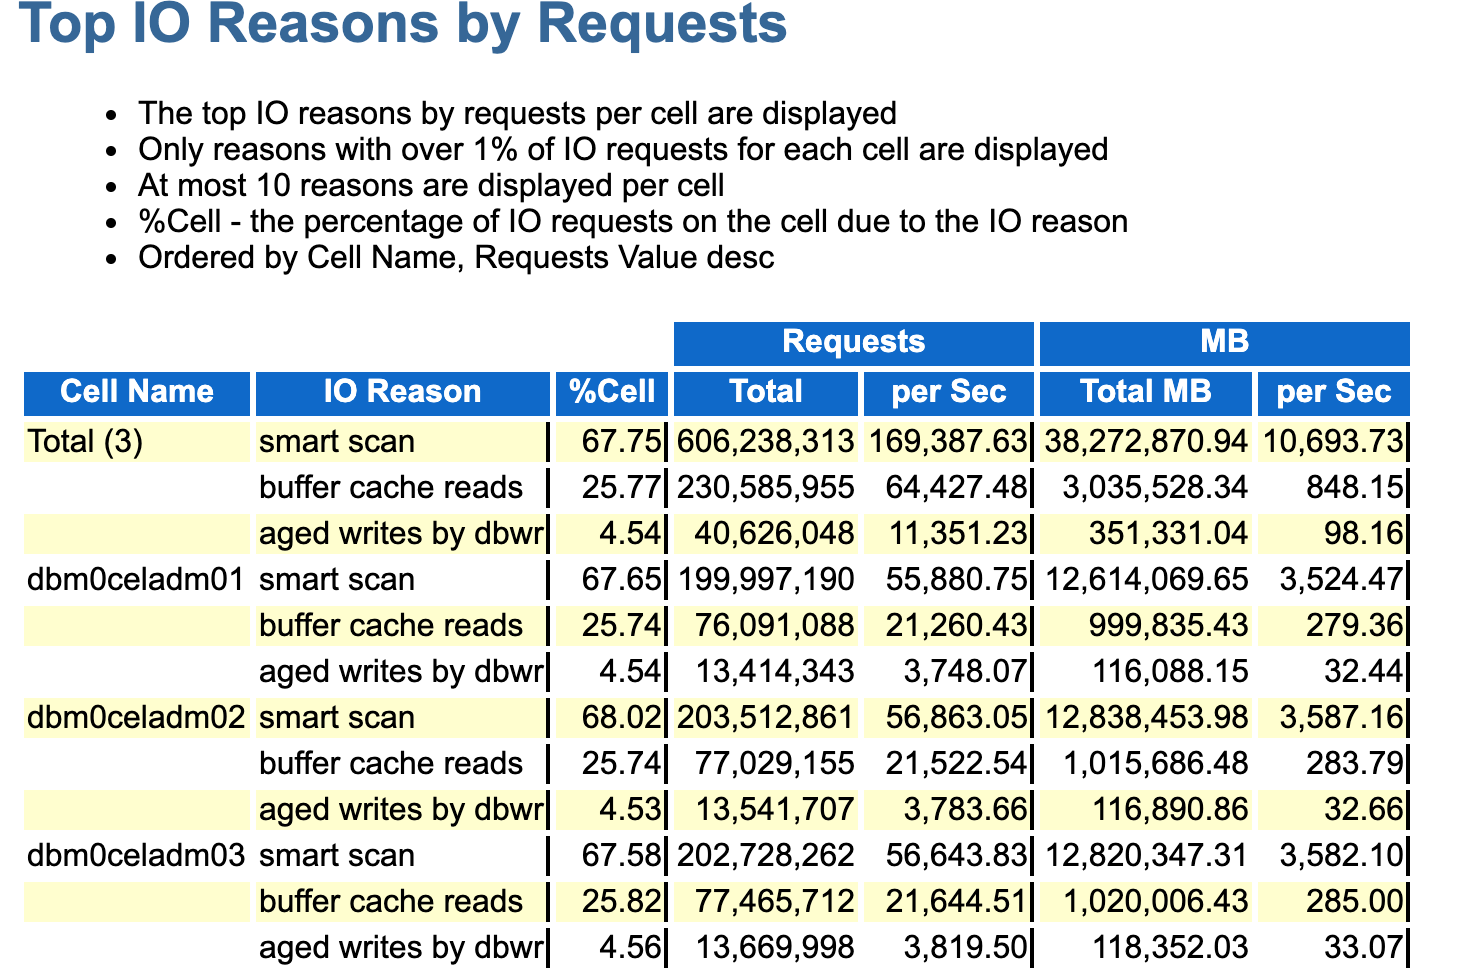 この画像は、AWRレポートのTop IO Reasons by Requestsセクションの例を示しています。